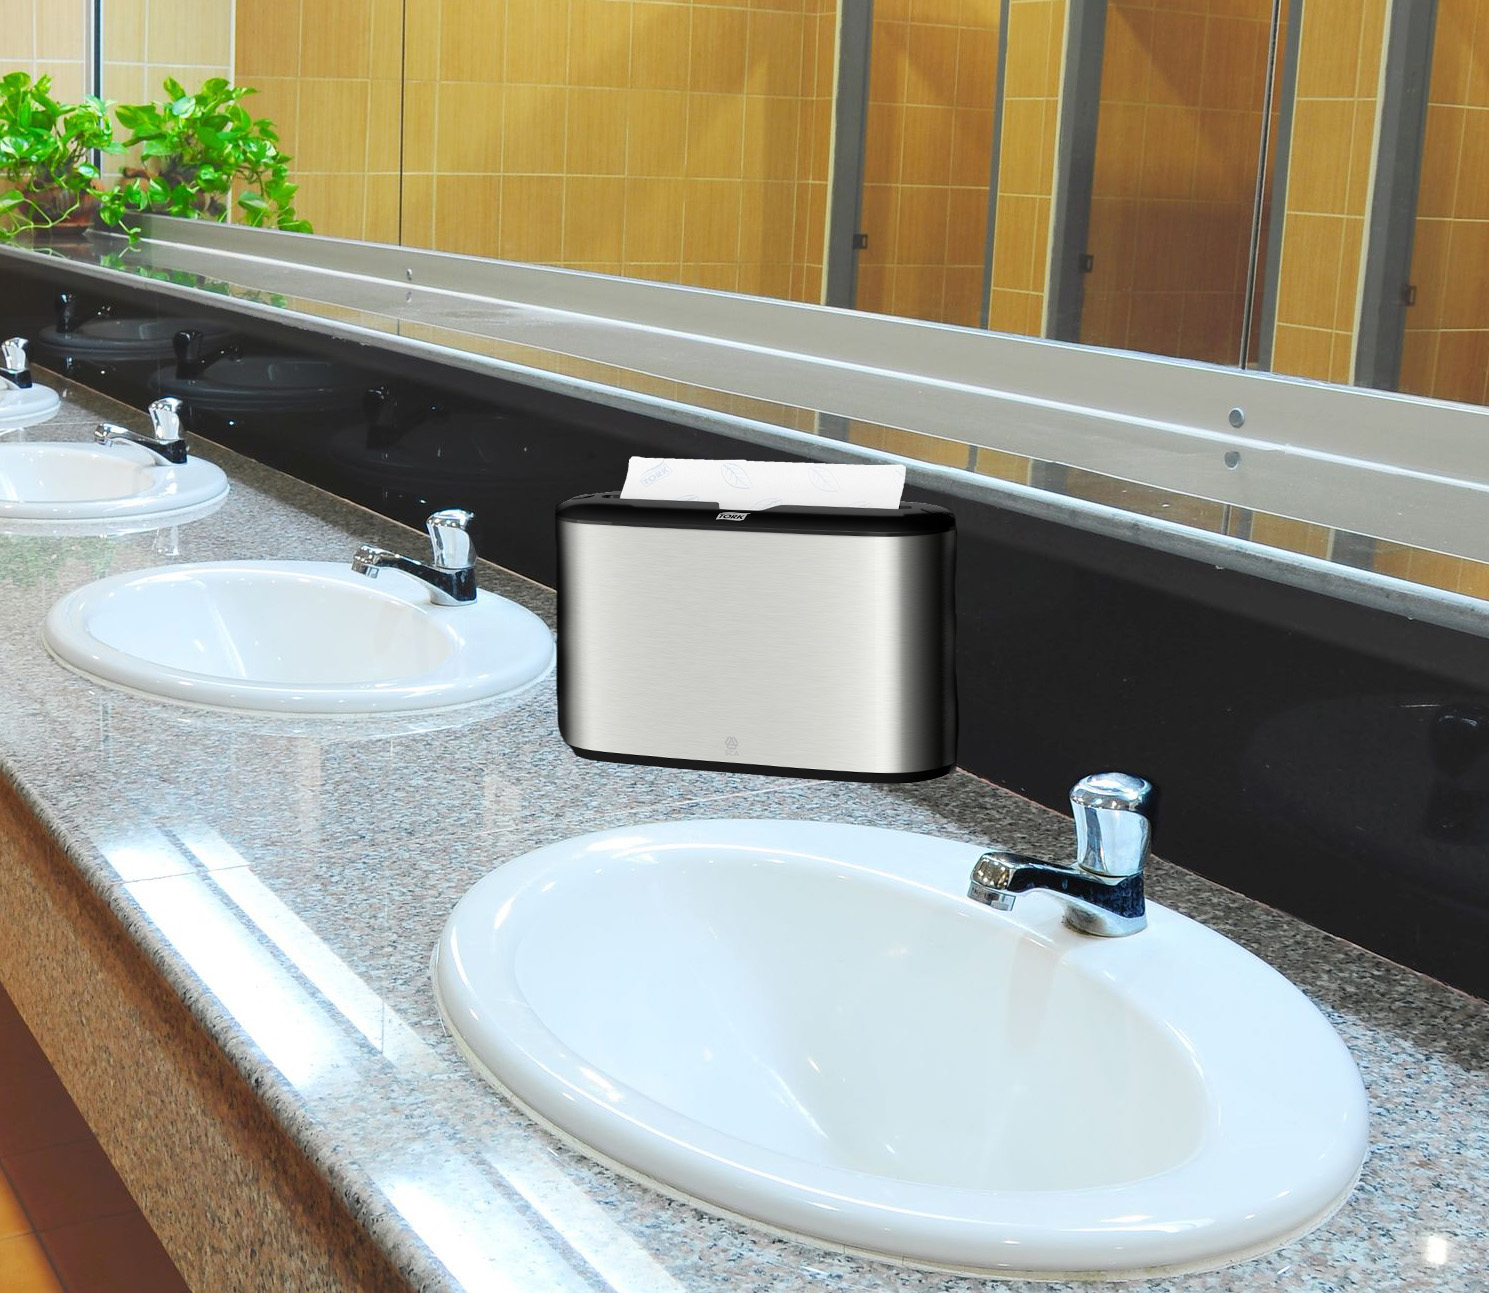 HDi Countertop Multifold towel dispenser